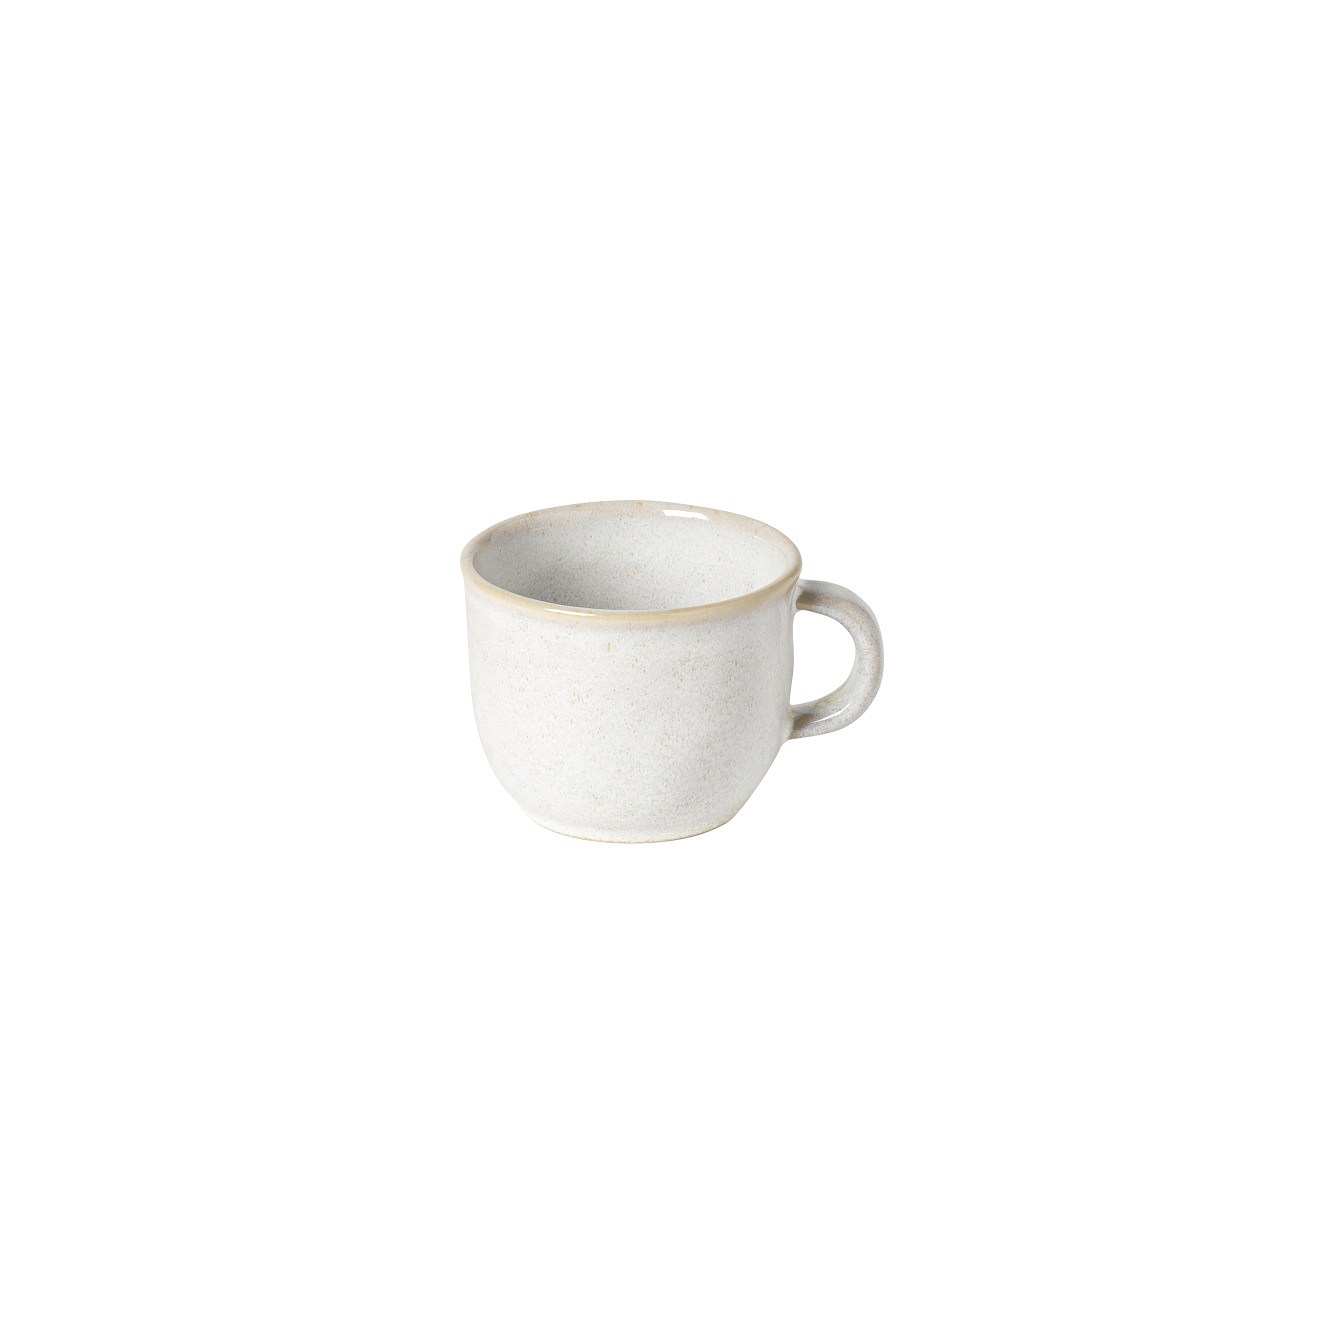 Roda Branca Tea Cup 0.20l Gift